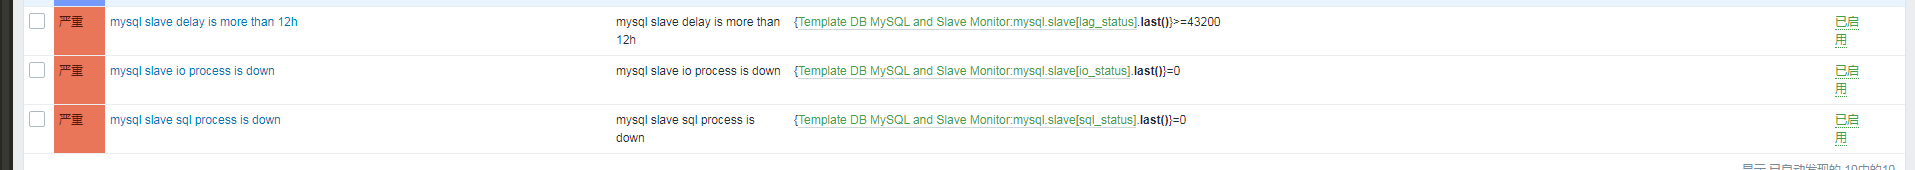 MYSQL 5.6中从库复制的部署和监控示例